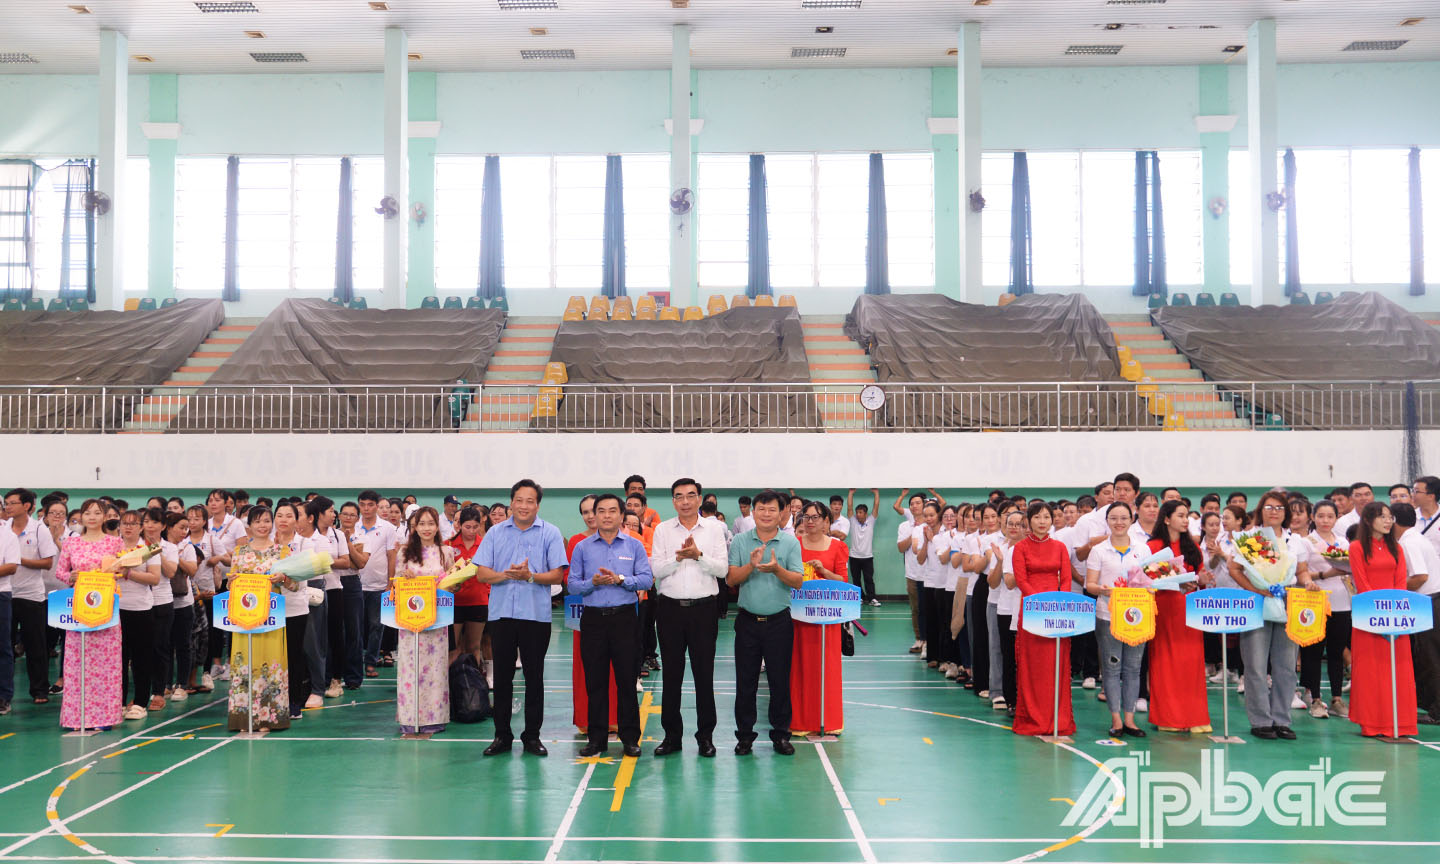 Lãnh đạo Sở TN&MT tỉnh Tiền Giang trao cờ lưu niệm cho các đội tham dự giải.